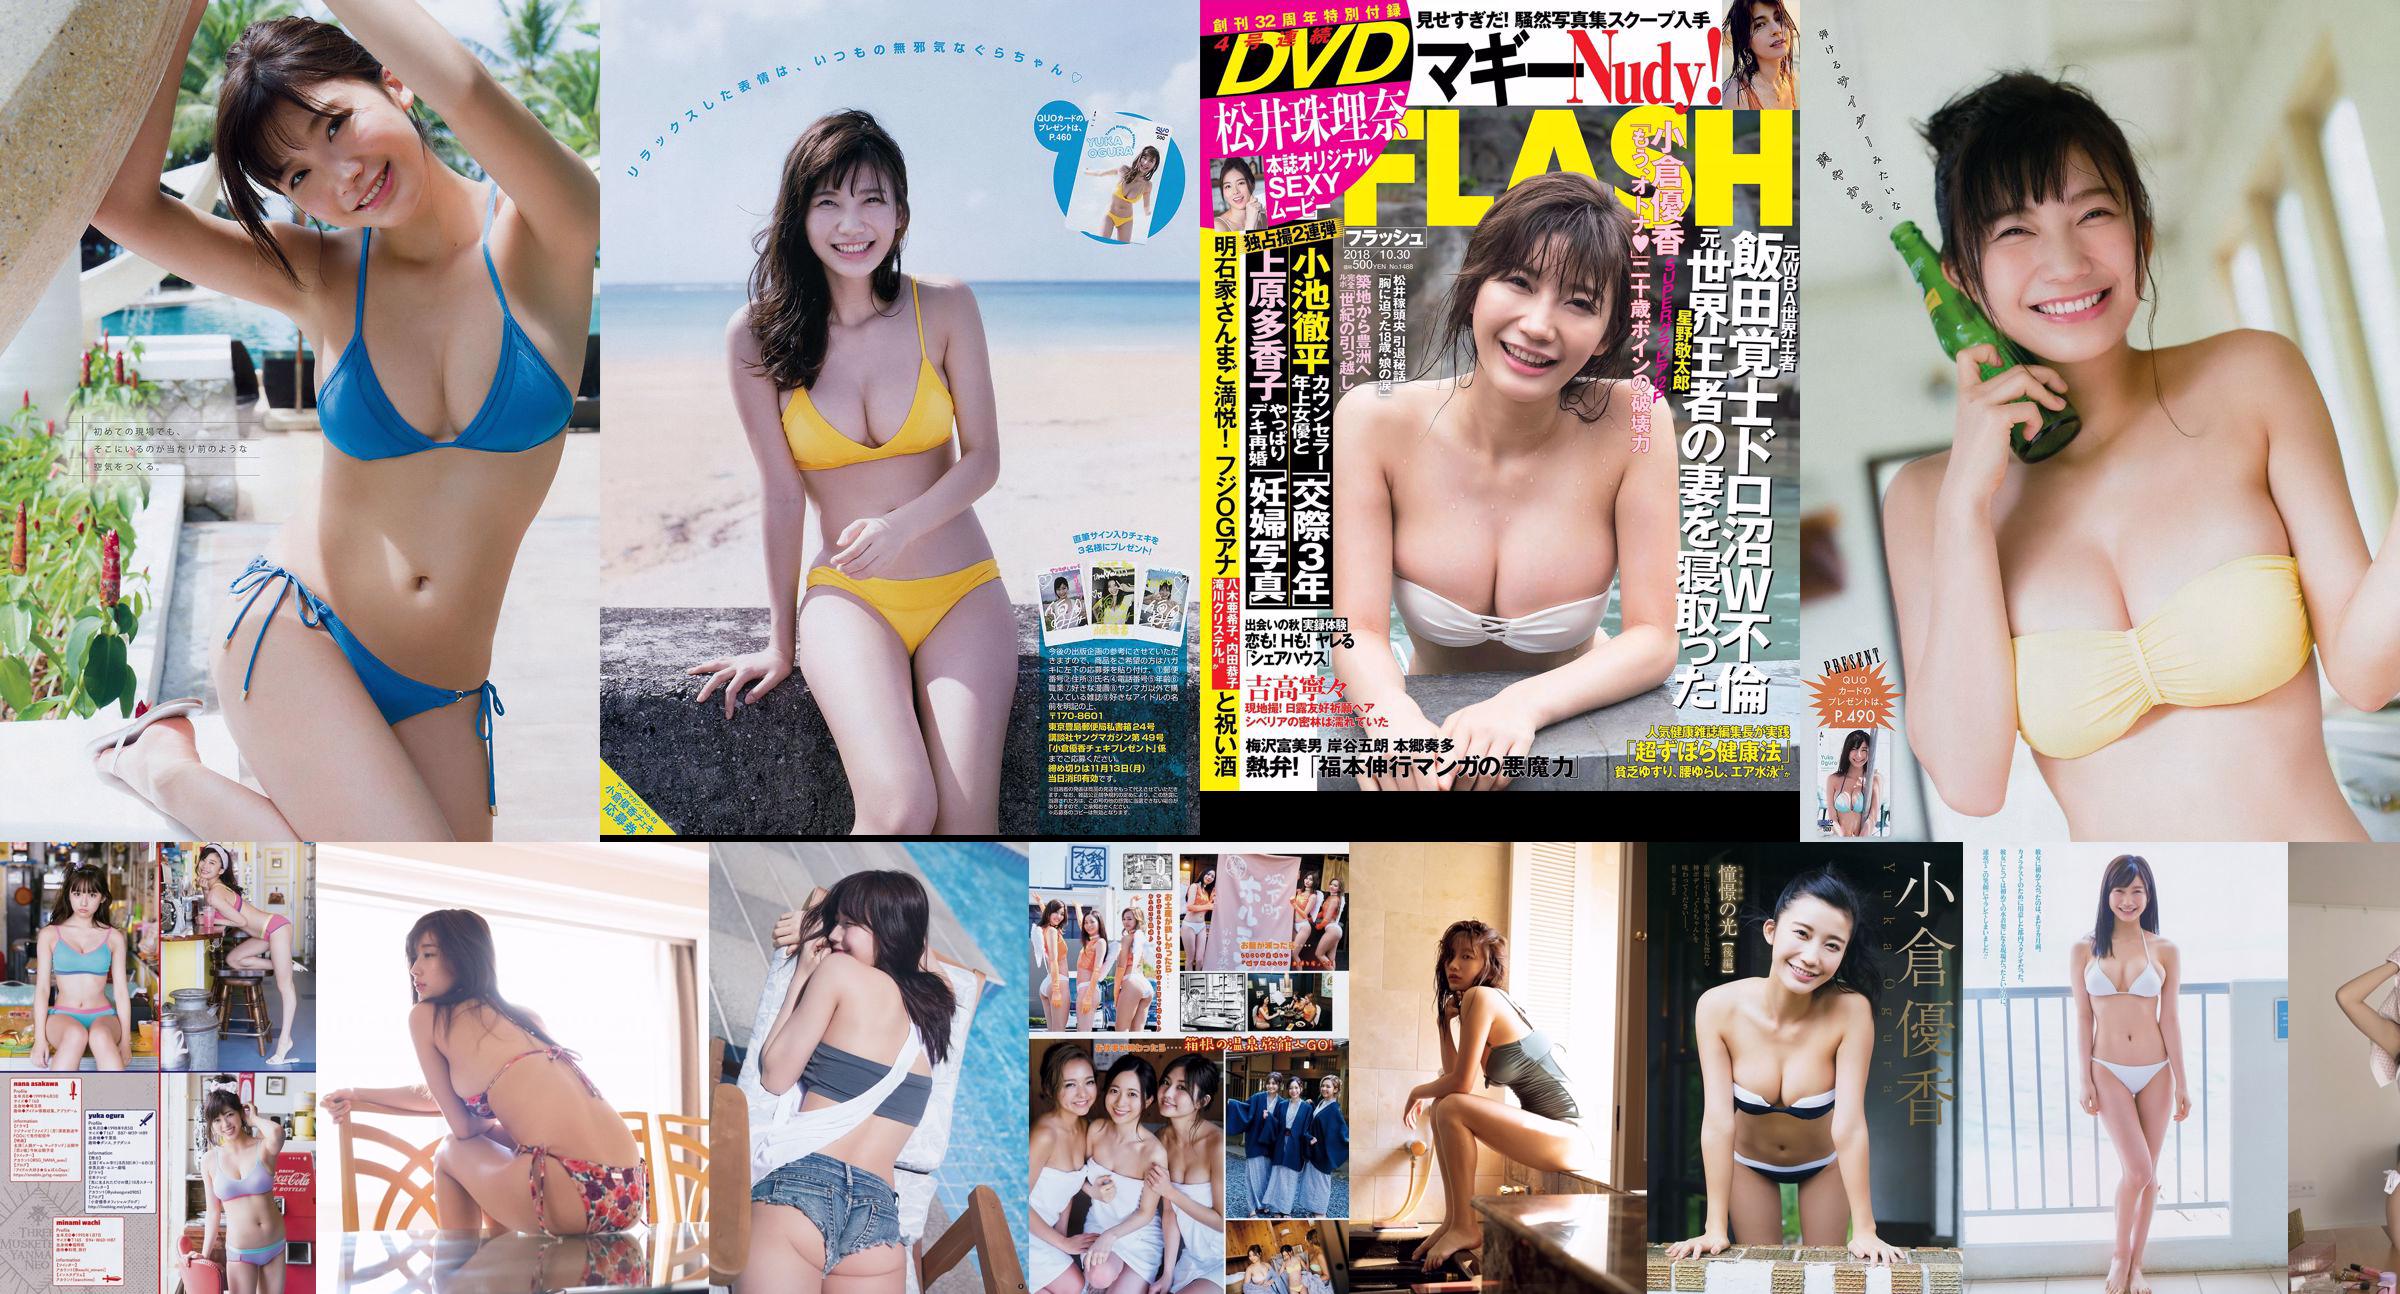 [Young Magazine] Ogura Yuka Suzmoto Miyu 2017 No.29 Photo Magazine No.462b82 Pagina 2